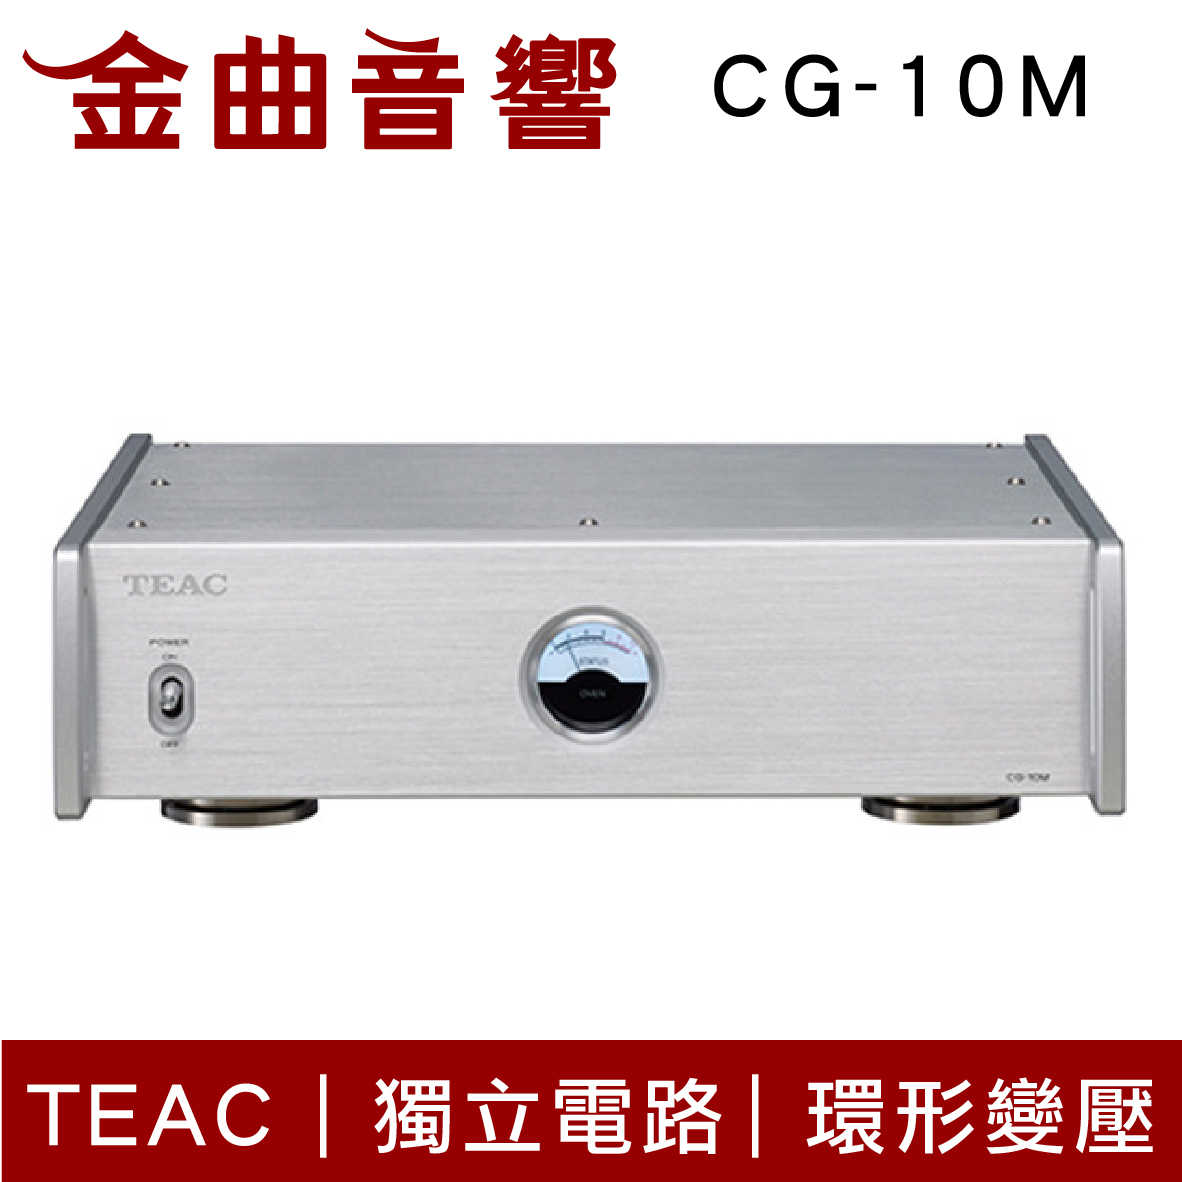 TEAC CG-10M 銀色 環形變壓 主時鐘 主時脈產生器 | 金曲音響